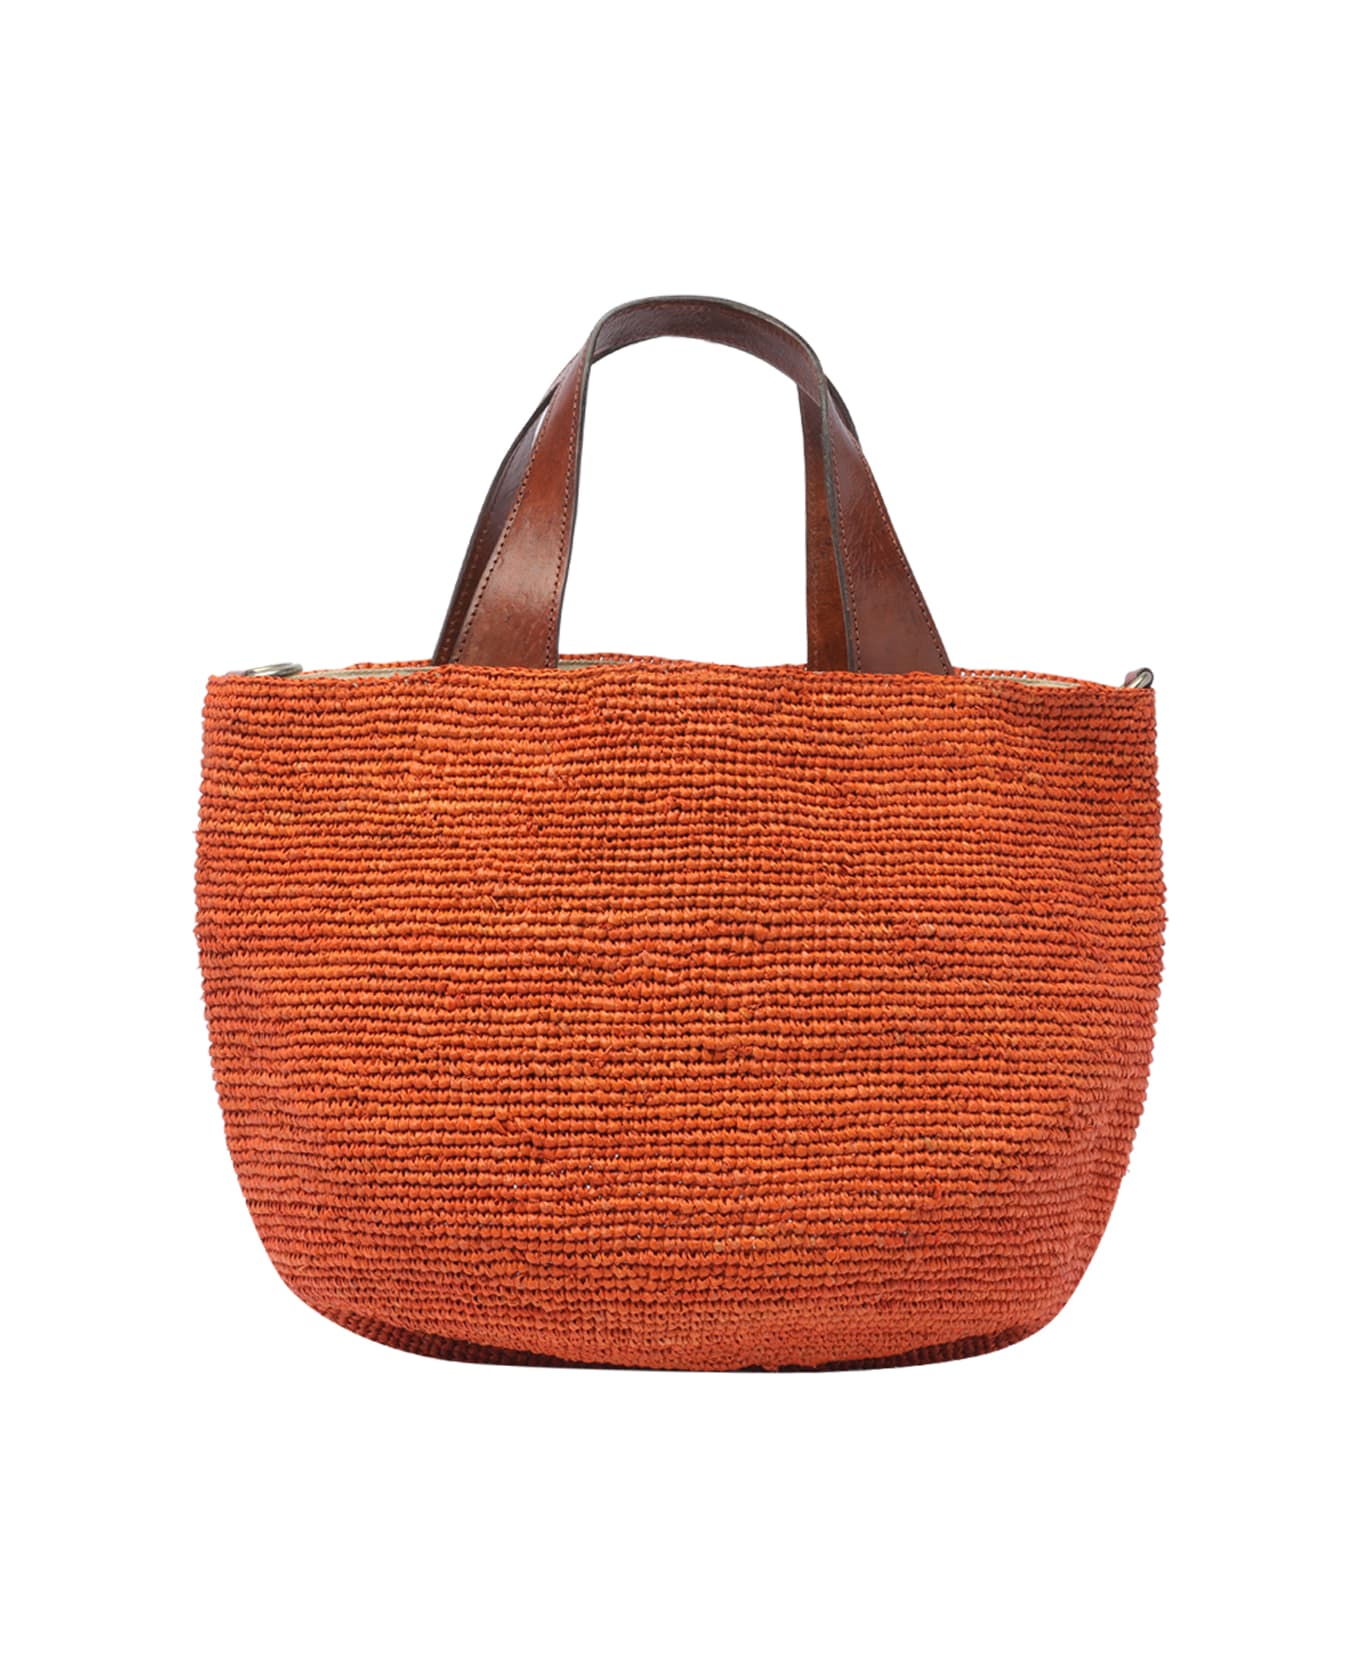 Ibeliv Mirozy Handbag - Orange